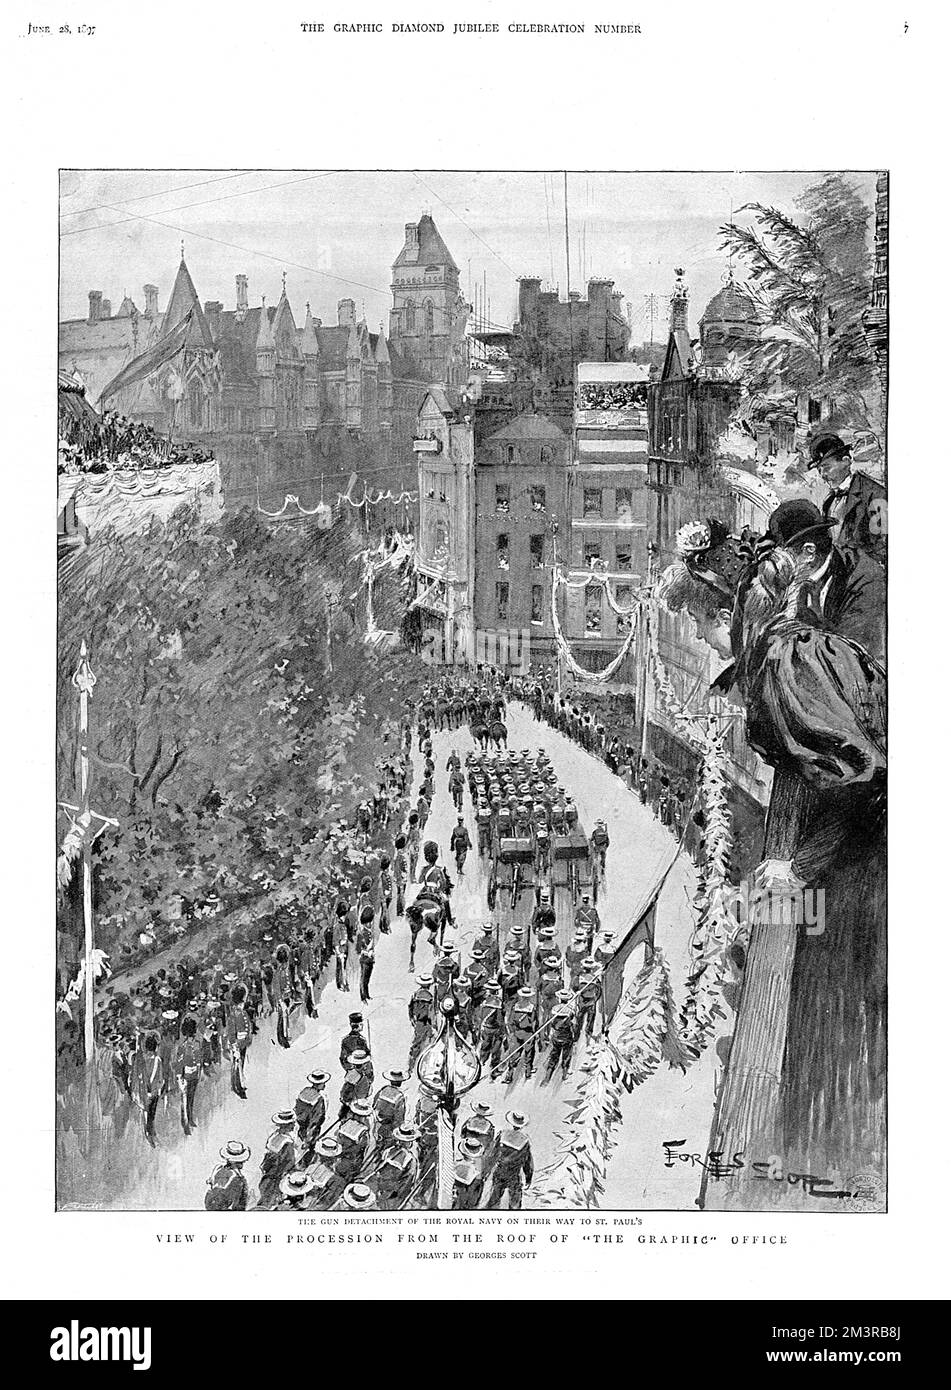 Vue aérienne depuis le toit du bureau graphique des célébrations du Jubilé de la reine Victoria le 20 juin 1897, avec le détachement d'armes de la Royal Navy passant par la cathédrale Saint-Paul. Date : 20 juin 1897 Banque D'Images